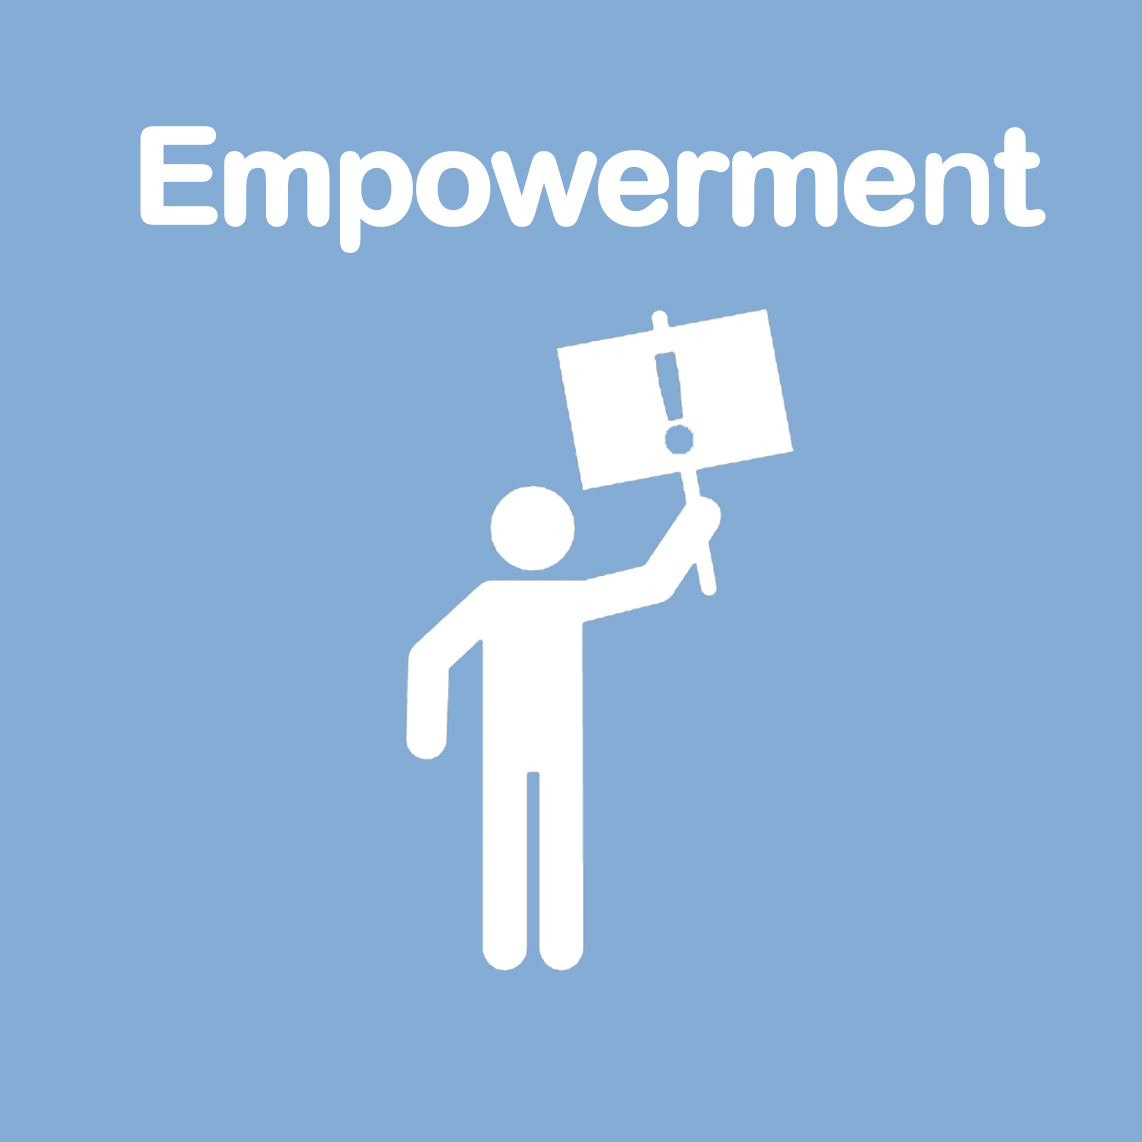 Empowerment